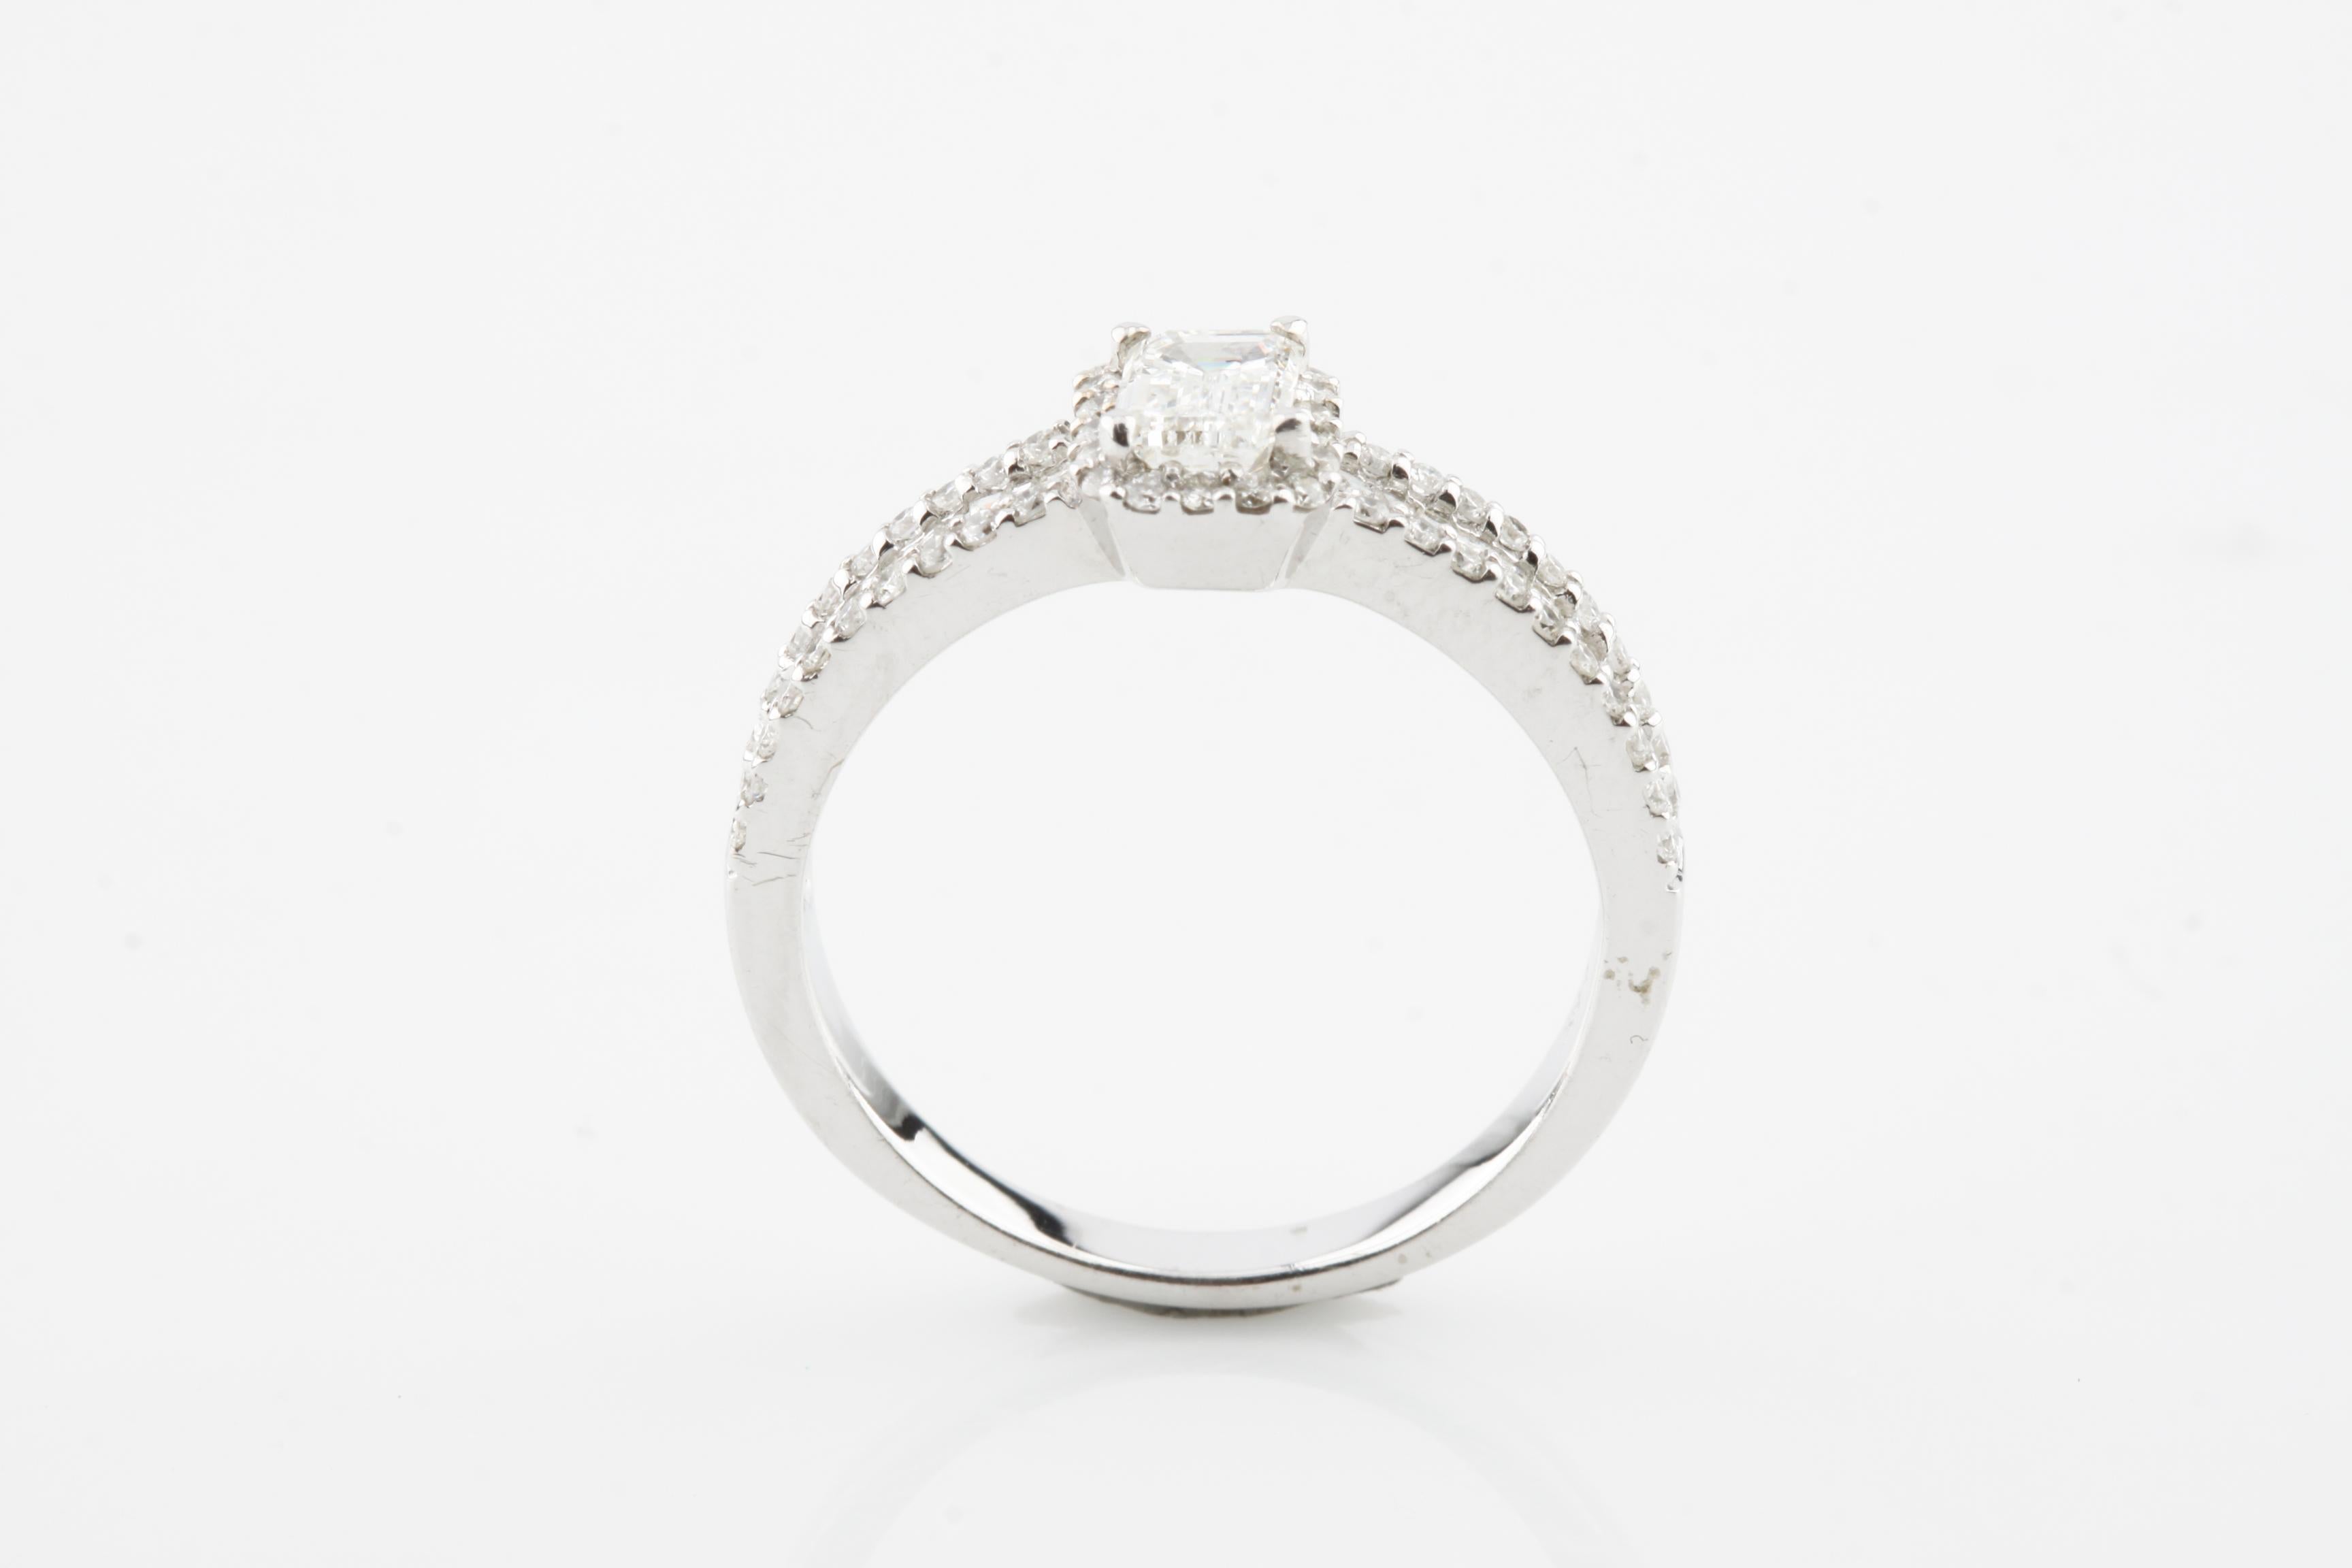 Eine elektronisch geprüfte 14K Weißgold Damen gegossen Diamant Einheit Ring mit einem glänzenden Finish.
Zustand ist neu, gute Verarbeitung.
Der Ring besteht aus einem Solitärdiamanten, der in einer Diamantengalerie gefasst ist, die von